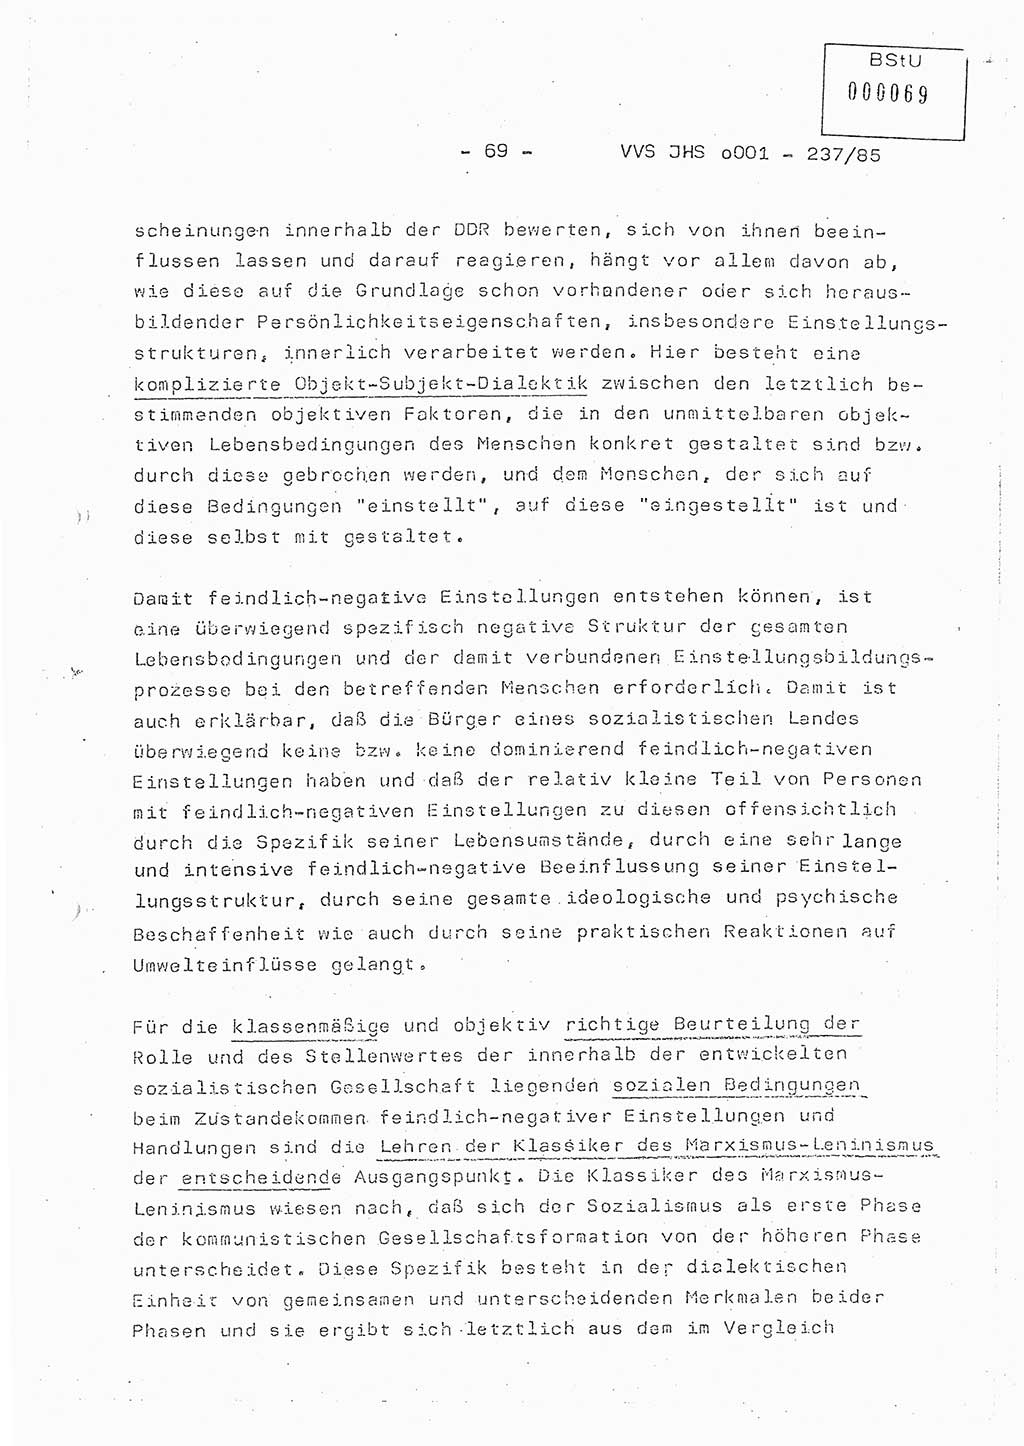 Dissertation Oberstleutnant Peter Jakulski (JHS), Oberstleutnat Christian Rudolph (HA Ⅸ), Major Horst Böttger (ZMD), Major Wolfgang Grüneberg (JHS), Major Albert Meutsch (JHS), Ministerium für Staatssicherheit (MfS) [Deutsche Demokratische Republik (DDR)], Juristische Hochschule (JHS), Vertrauliche Verschlußsache (VVS) o001-237/85, Potsdam 1985, Seite 69 (Diss. MfS DDR JHS VVS o001-237/85 1985, S. 69)